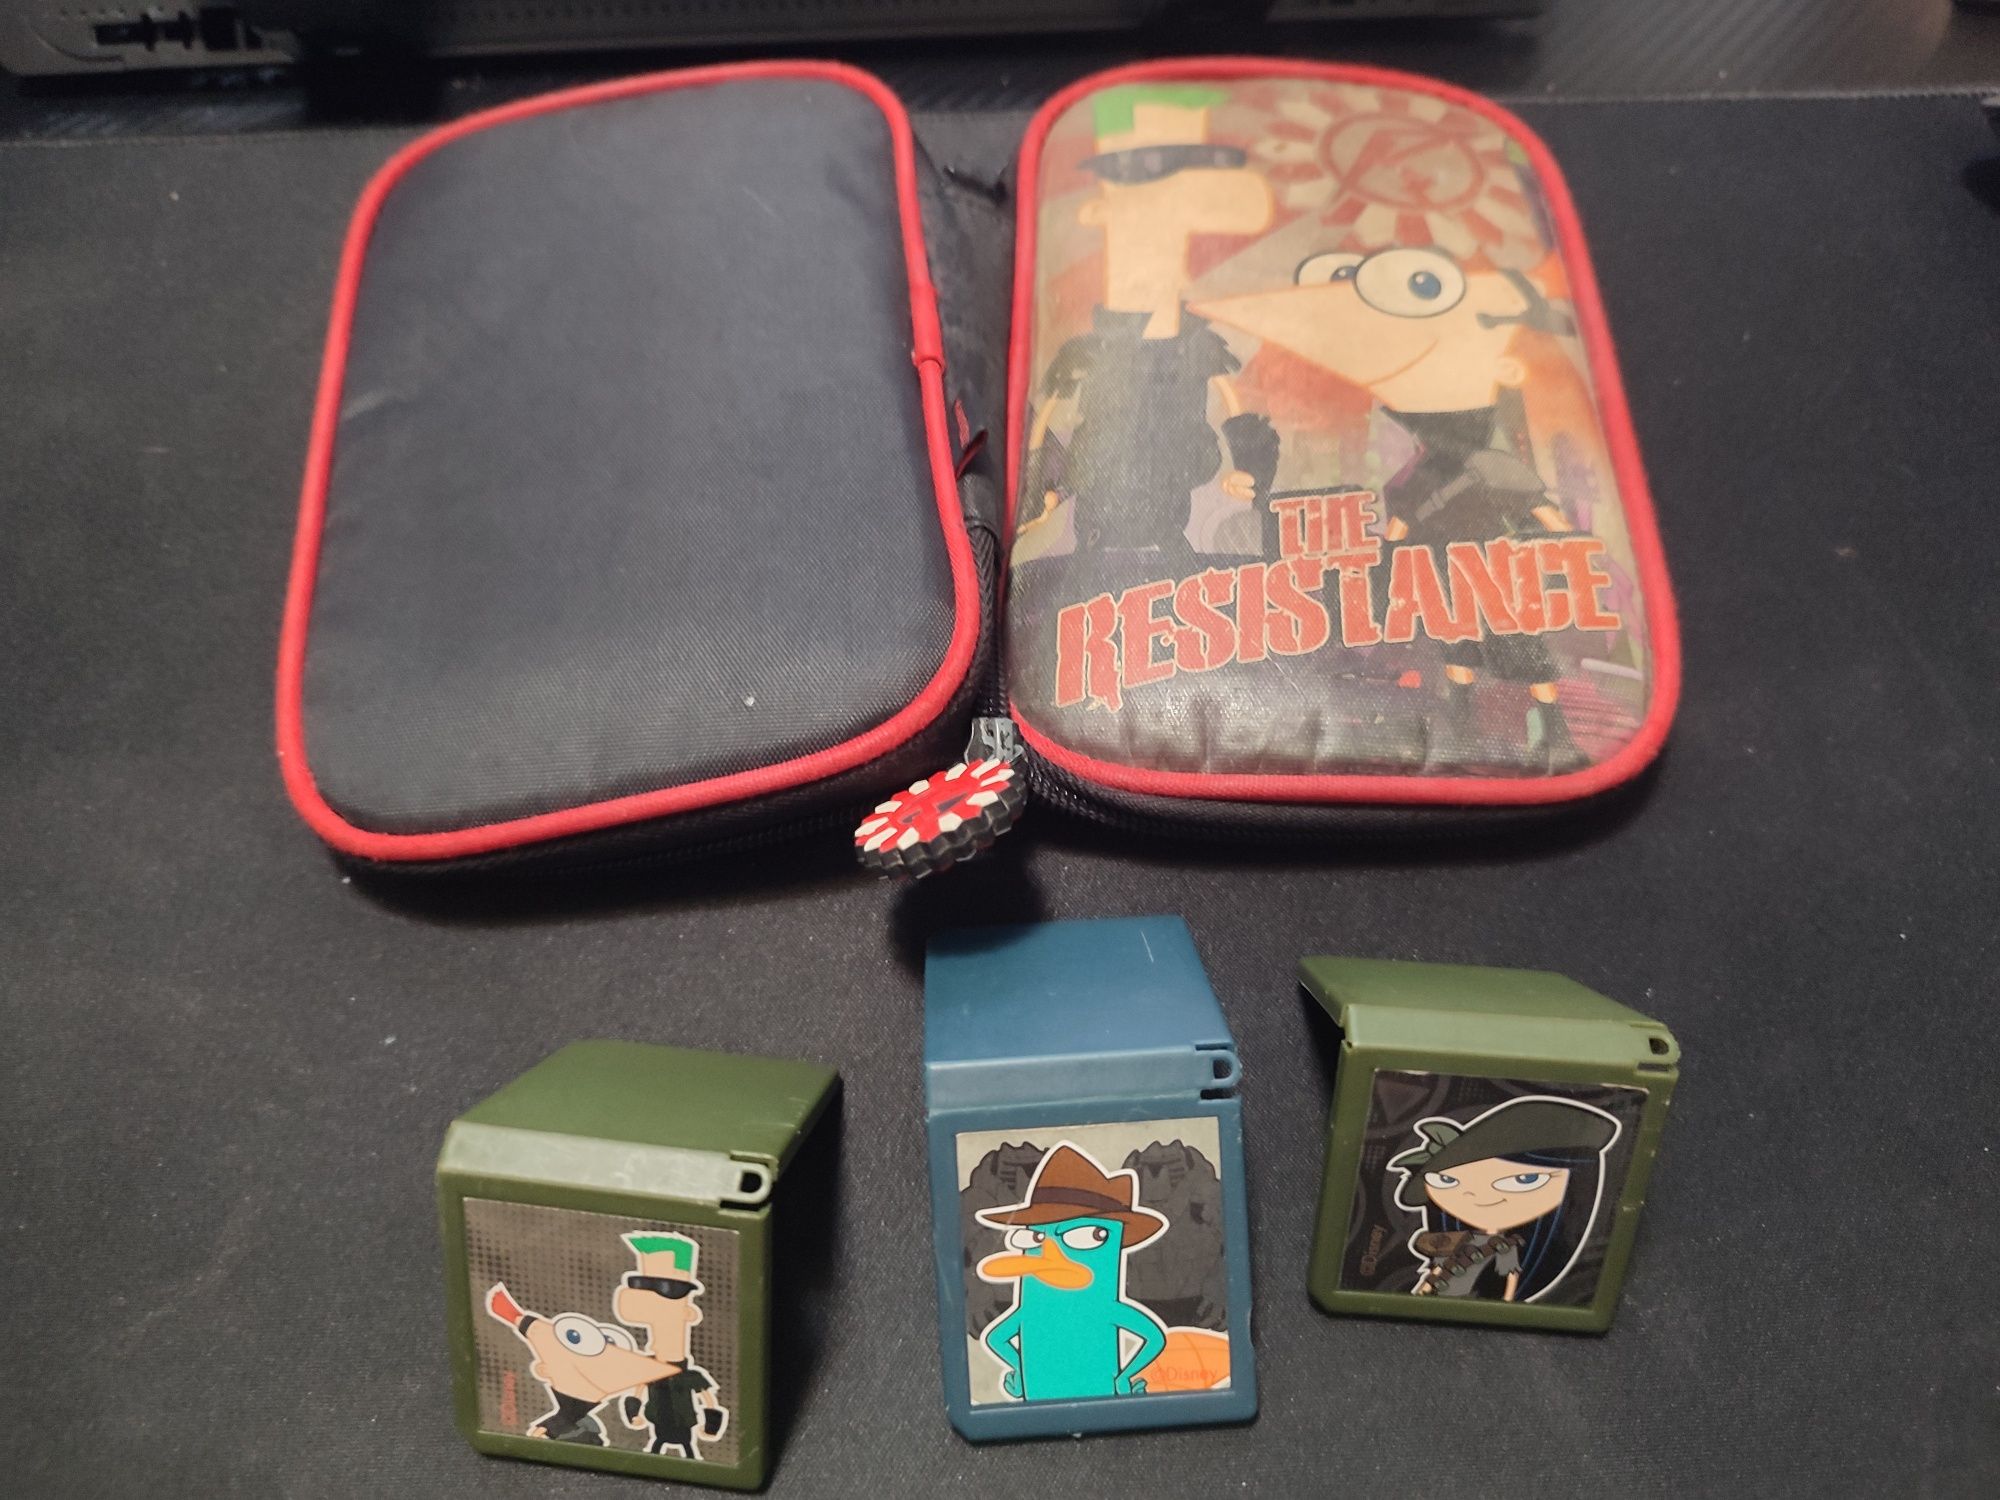 Caixa transporte Nintendo DS/3DS e 3 caixas p/jogos Phineas & Ferb